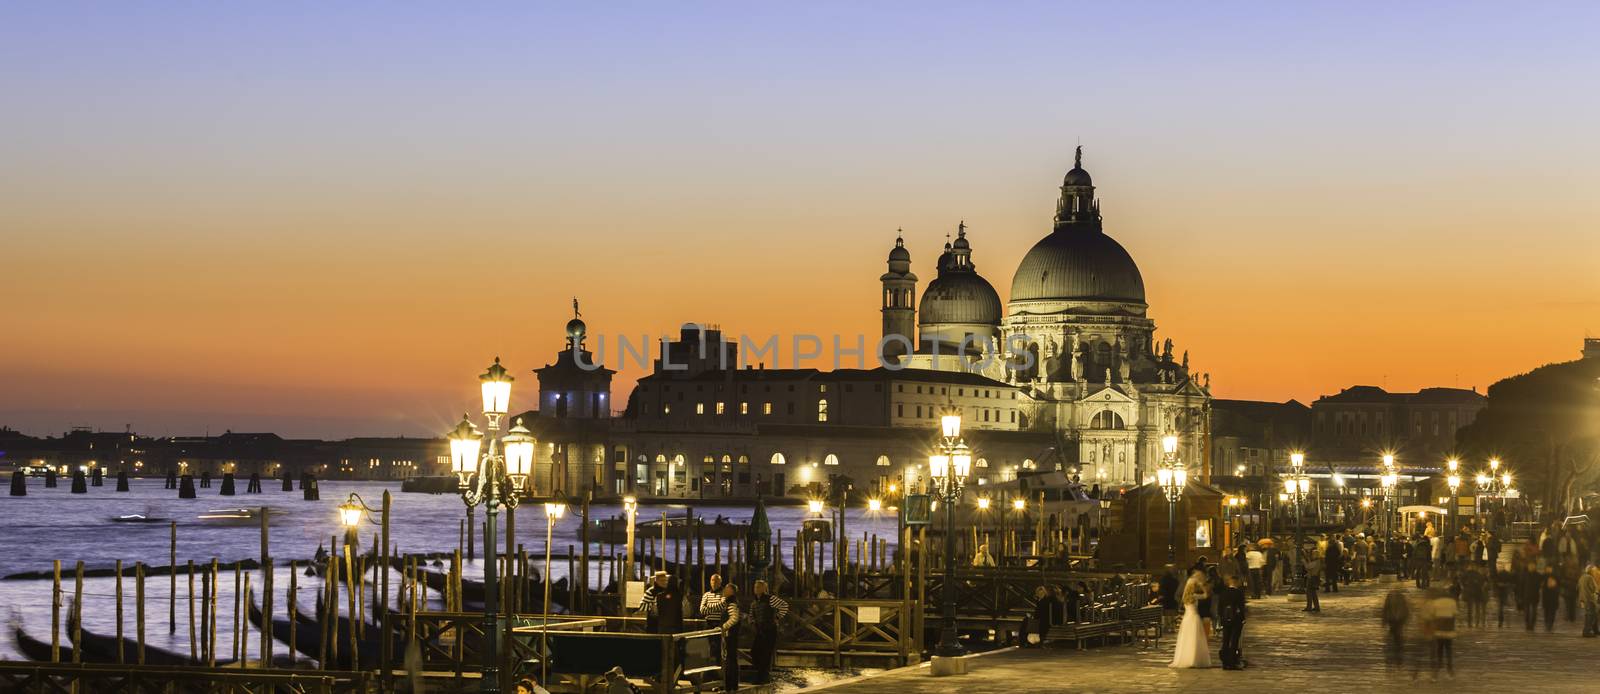 Romantic Italian city of Venice in sunset. World Heritage Site. Traditional Venetian wooden boats, gondolier and Roman Catholic church Basilica di Santa Maria della Salute.